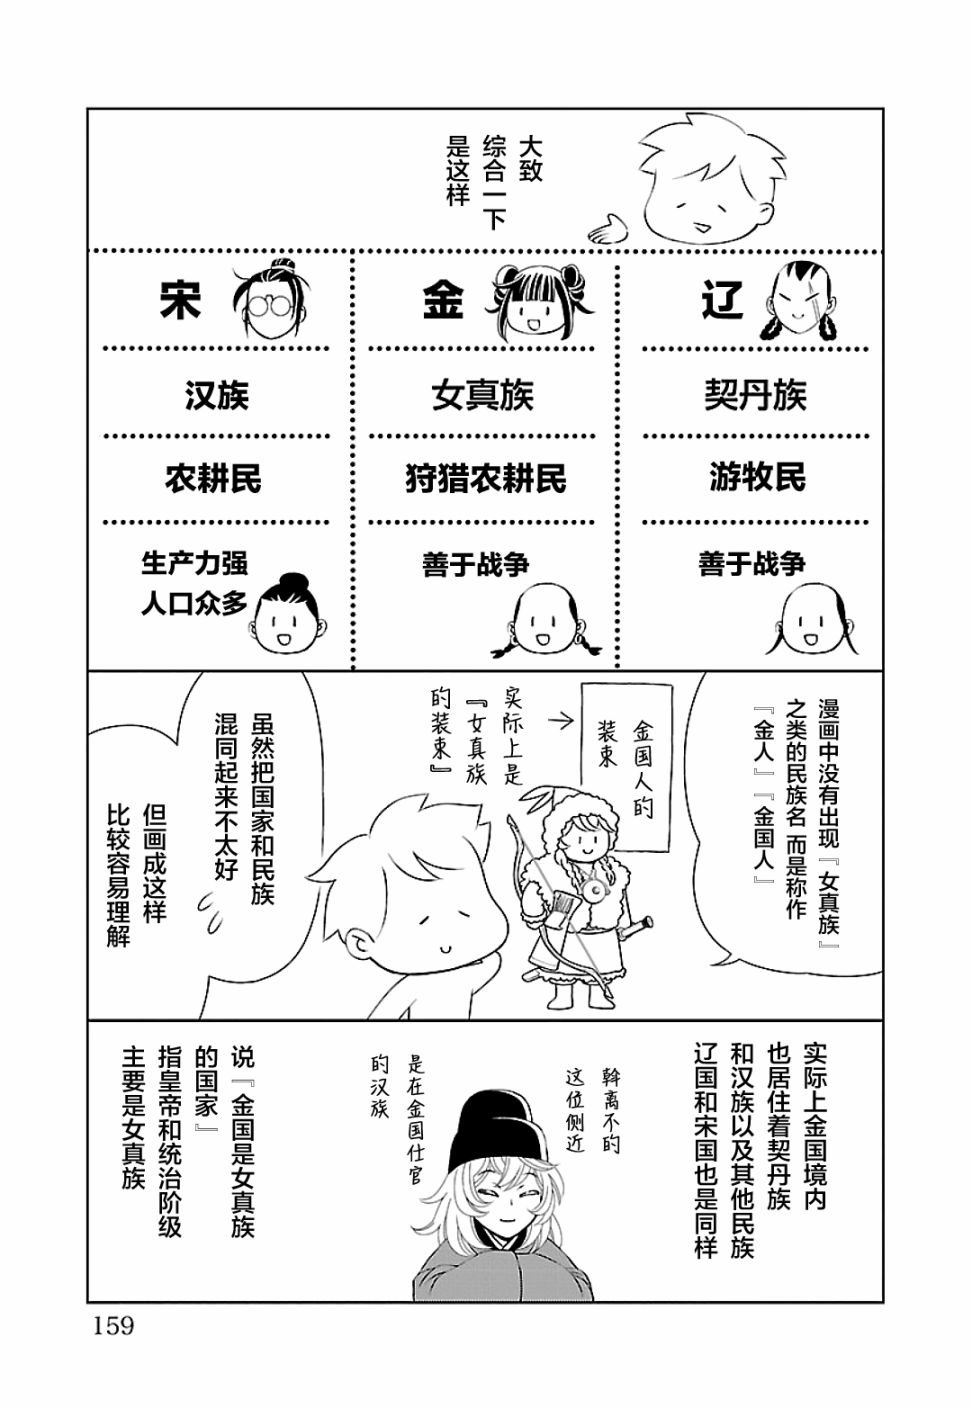 天上恋歌~金之公主与火之药师~漫画,第二卷后记4图